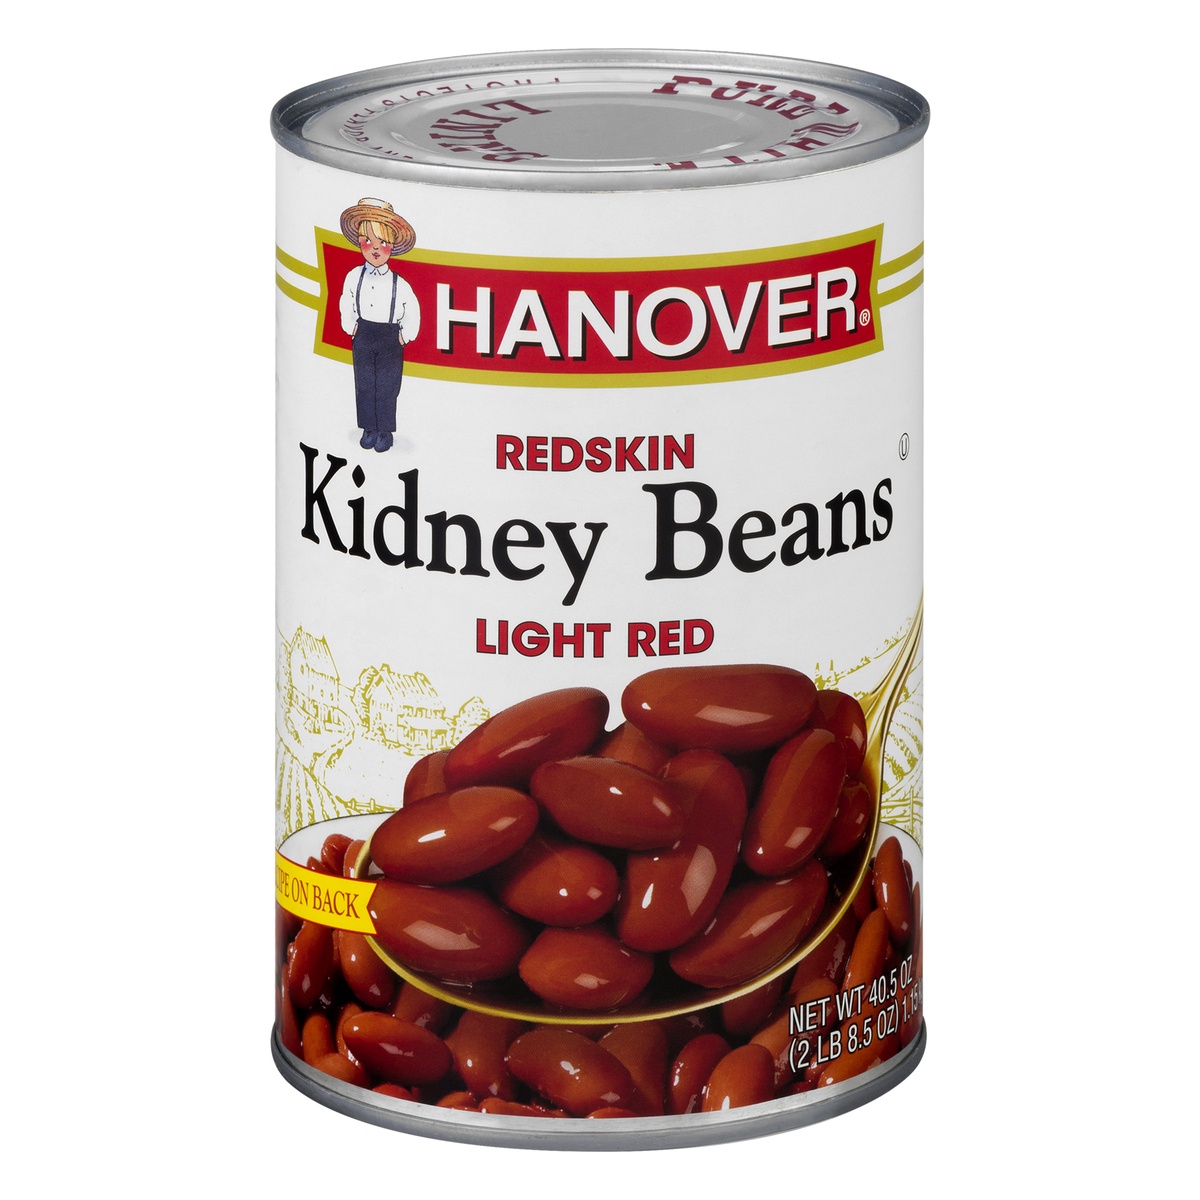 slide 1 of 1, Hanover Light Red Red Skin Kidney Beans 40 oz, 40 oz